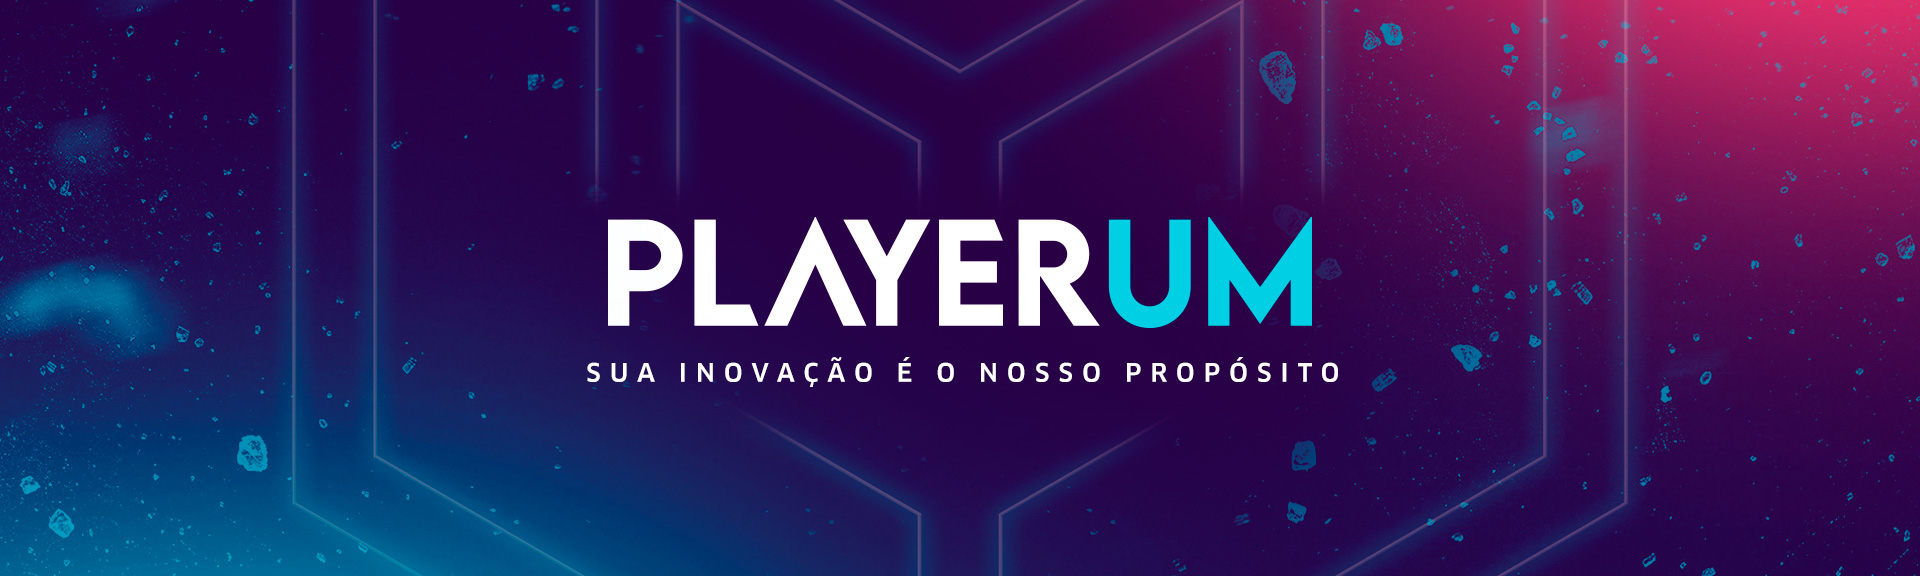 PlayerUm - Sua Inovação é o nosso propósito